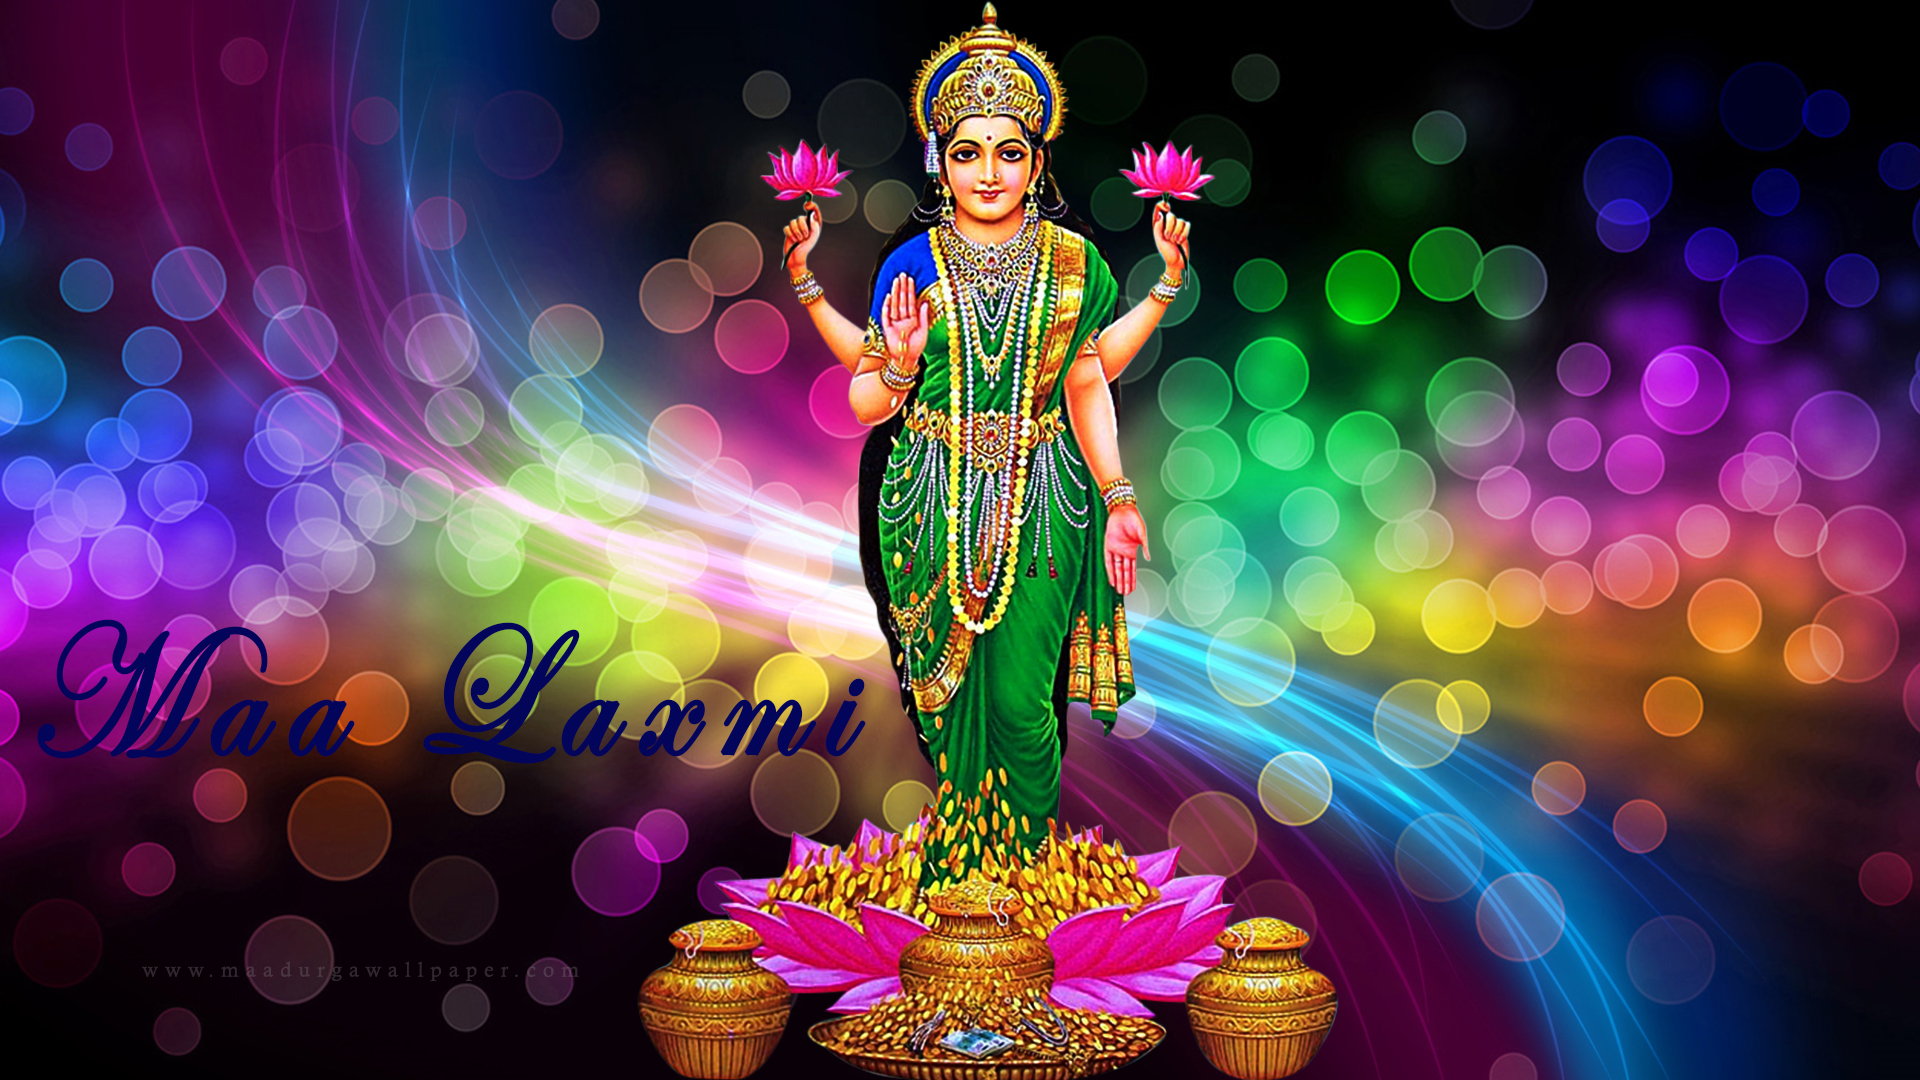 Free Download Goddess Lakshmi Wallpaper Hd Images Hindu Goddess 1920x1080 For Your Desktop Mobile Tablet Explore 26 God Lakshmi Wallpapers God Lakshmi Wallpapers God Wallpapers God Wallpaper